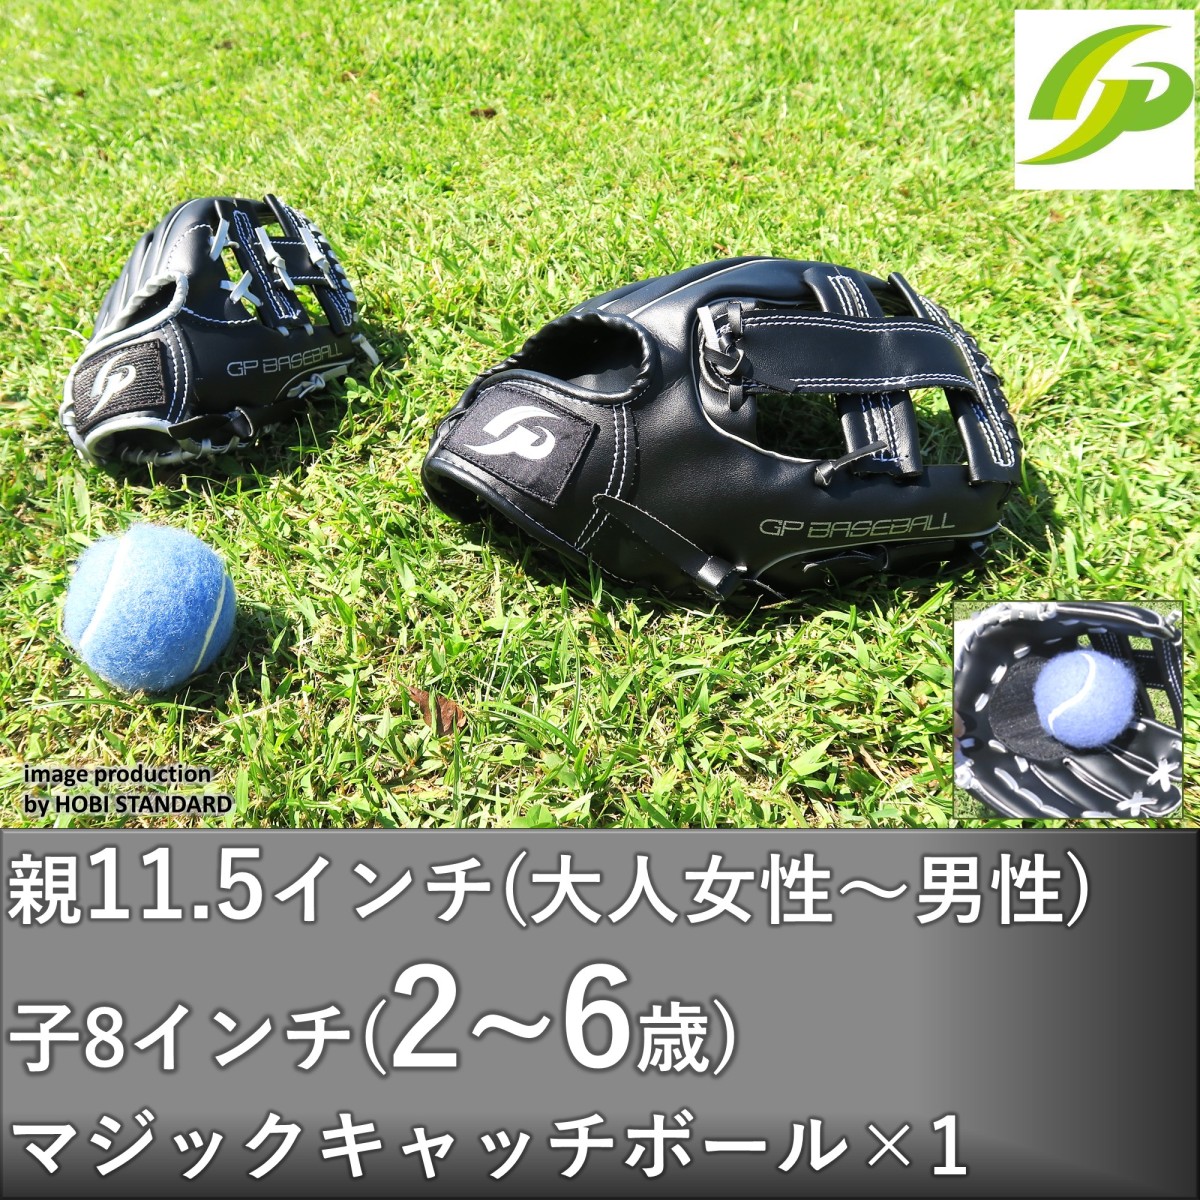 [GP] бейсбол родители . перчатка комплект [ взрослый /2~6 лет для ] Koshien . место игрок .. специальный мяч есть простой catch мяч все черный большой .WBC ( взрослый правый бросание / ребенок правый для метания )